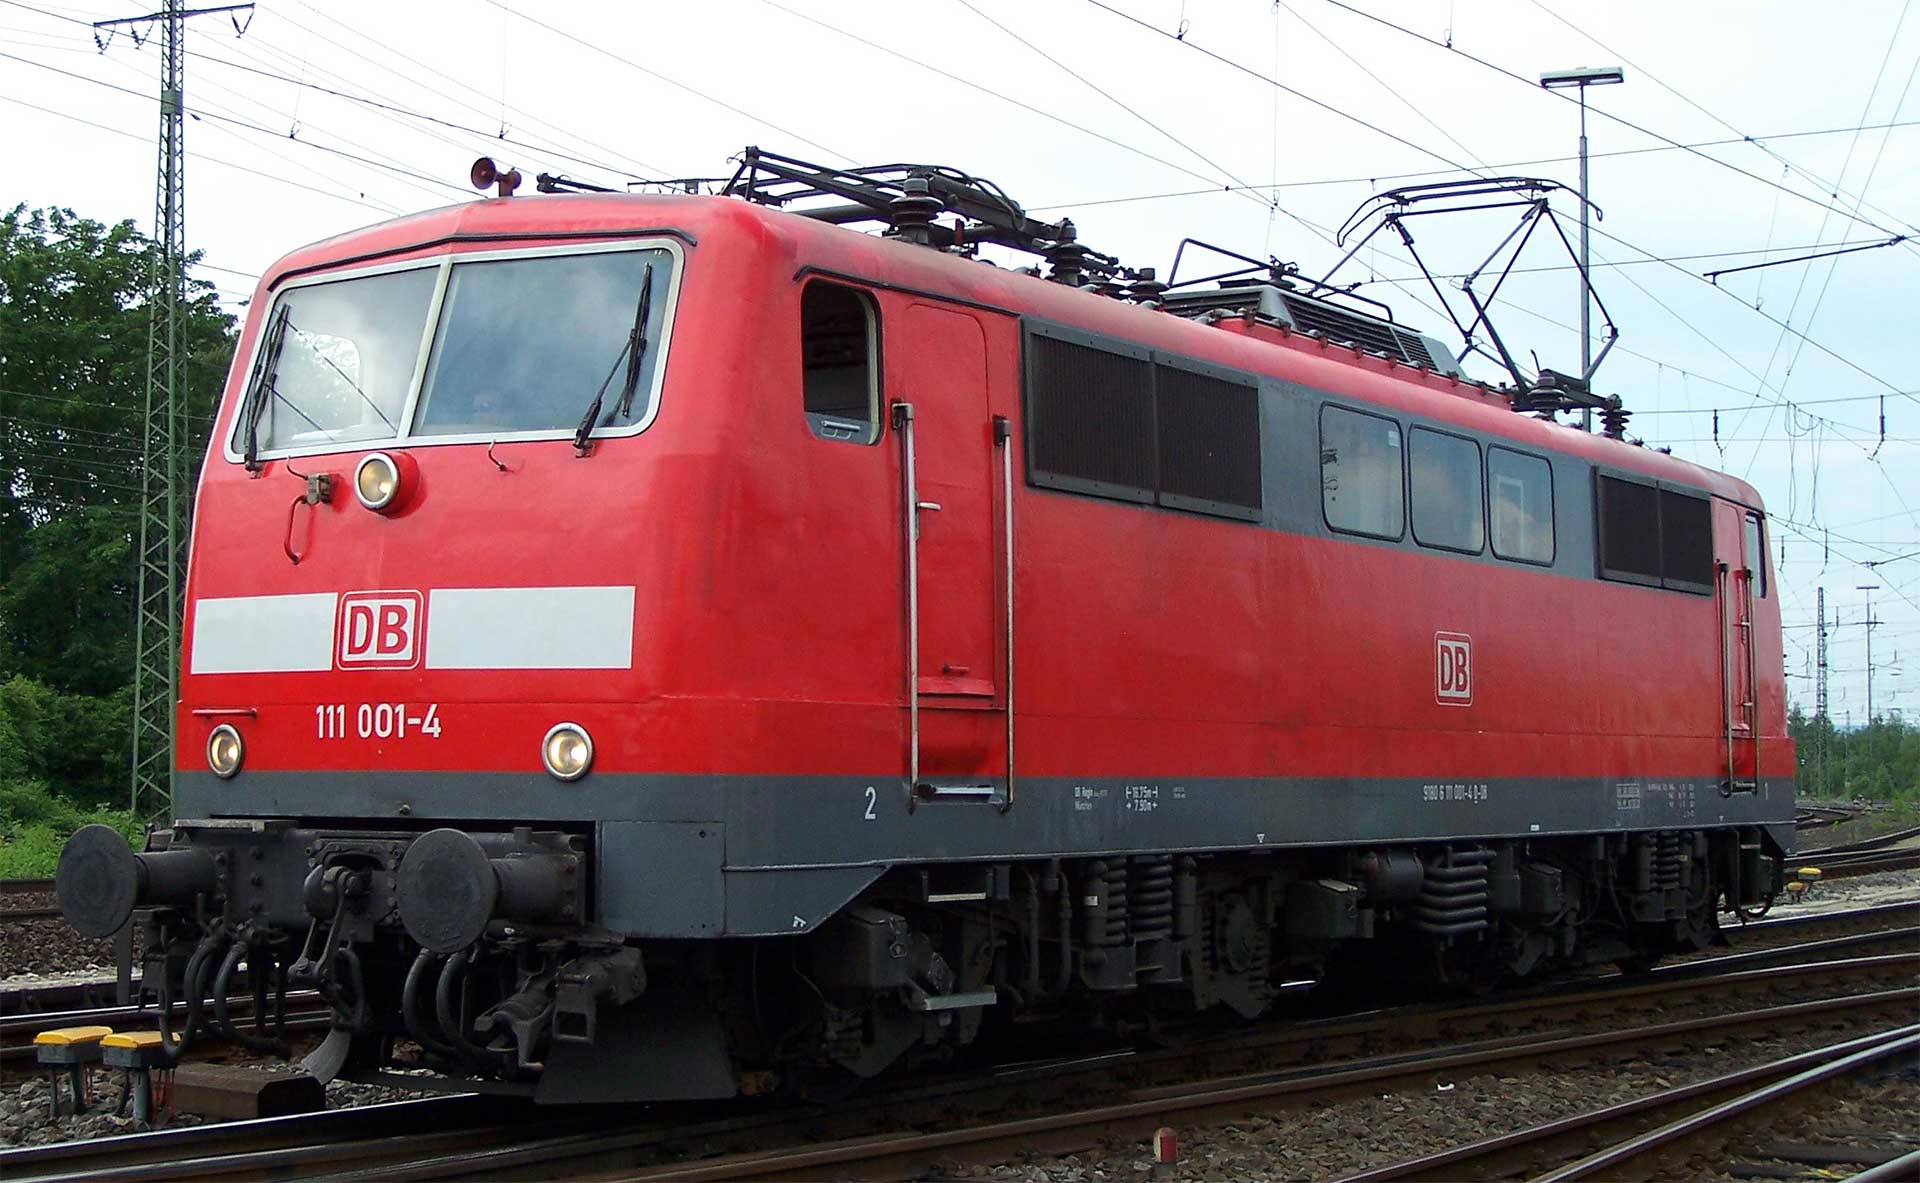 DB Class 111